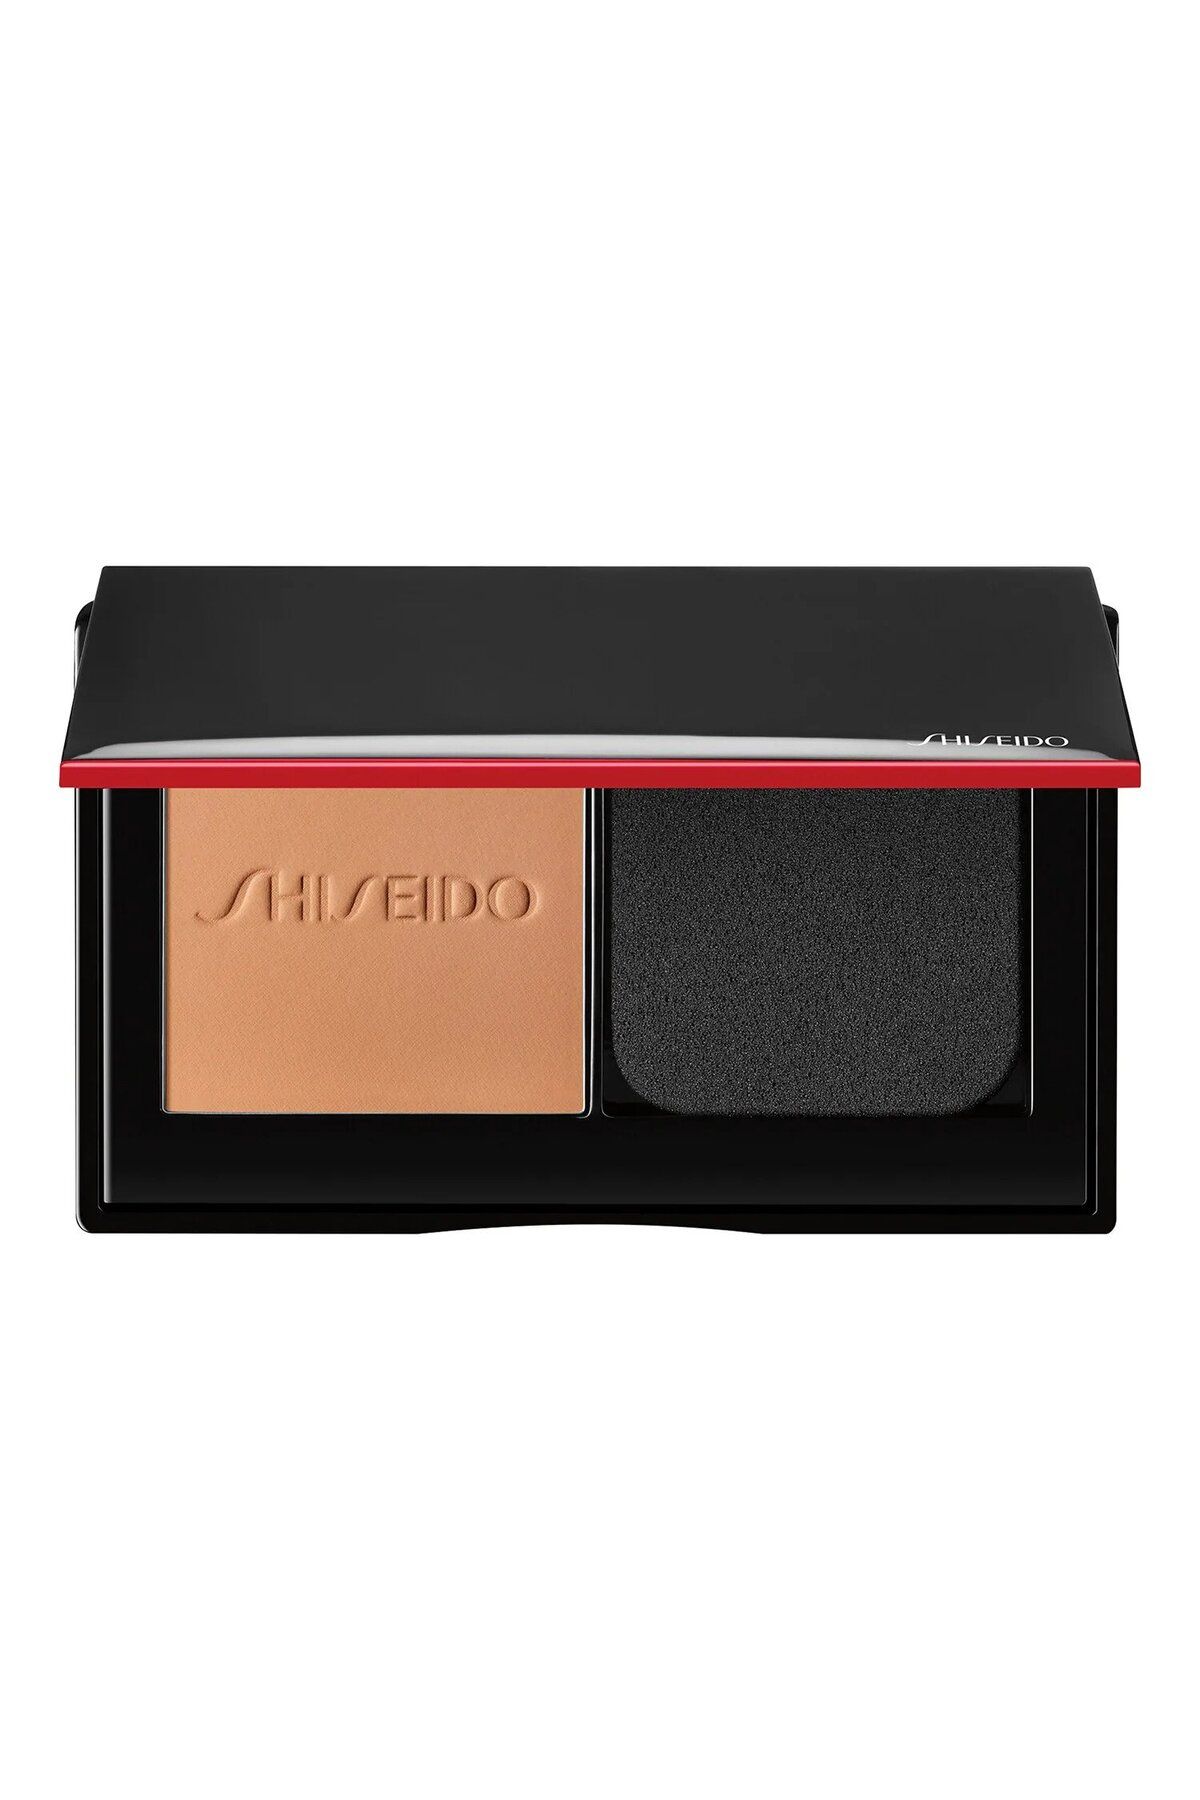 Shiseido Synchro Skin Self-Refreshing Custom Finish Powder - 24 Saat Dayanıklı Çift Kullanım Özellikli Pudra